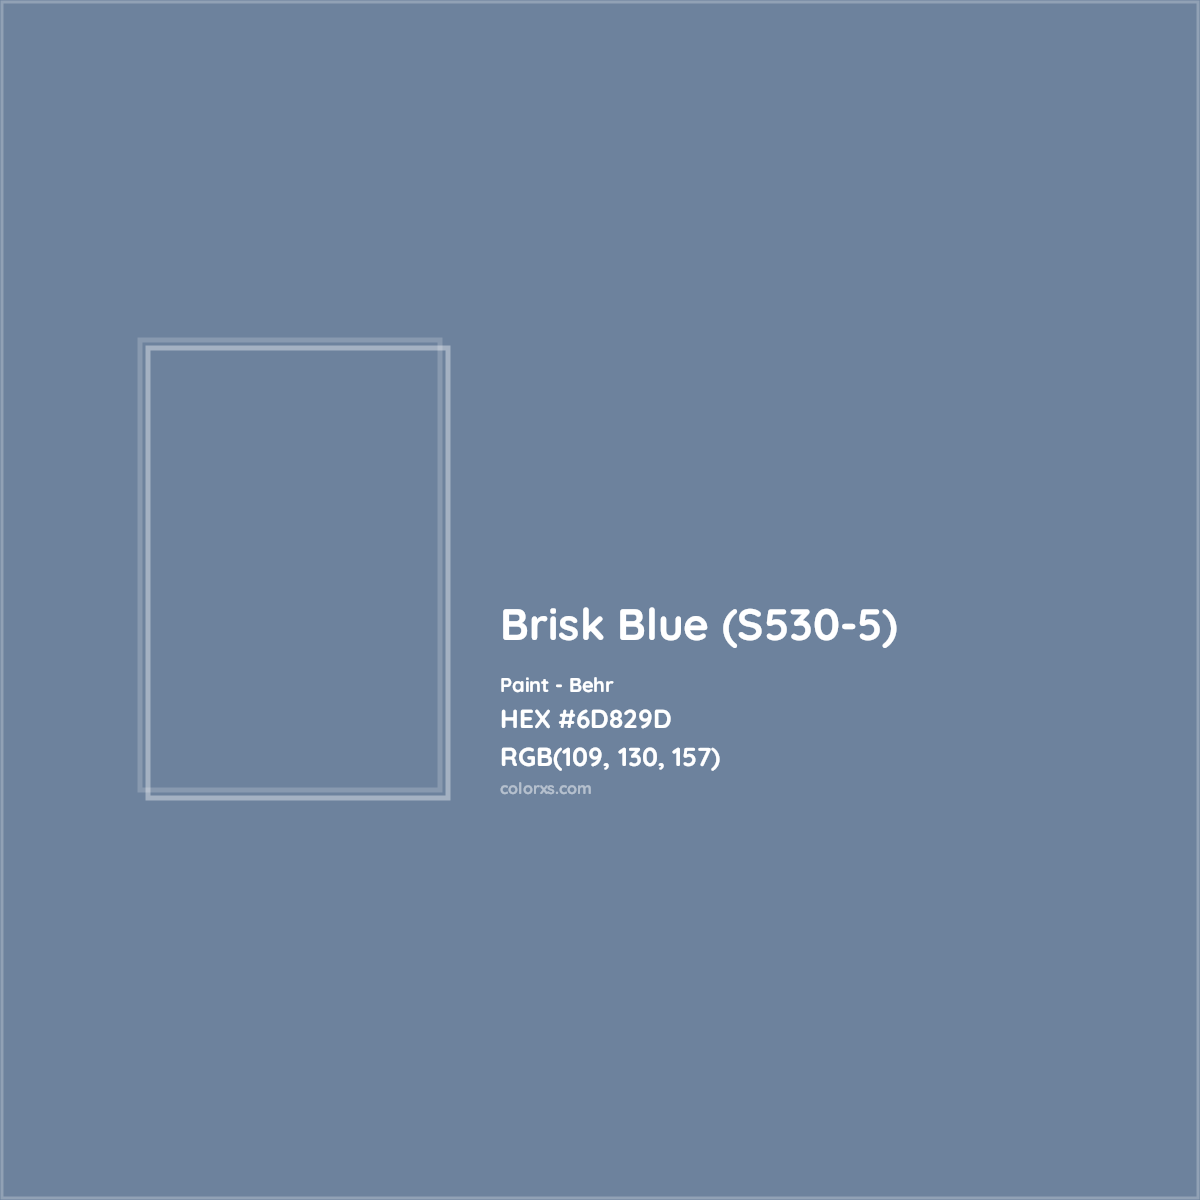 HEX #6D829D Brisk Blue (S530-5) Paint Behr - Color Code